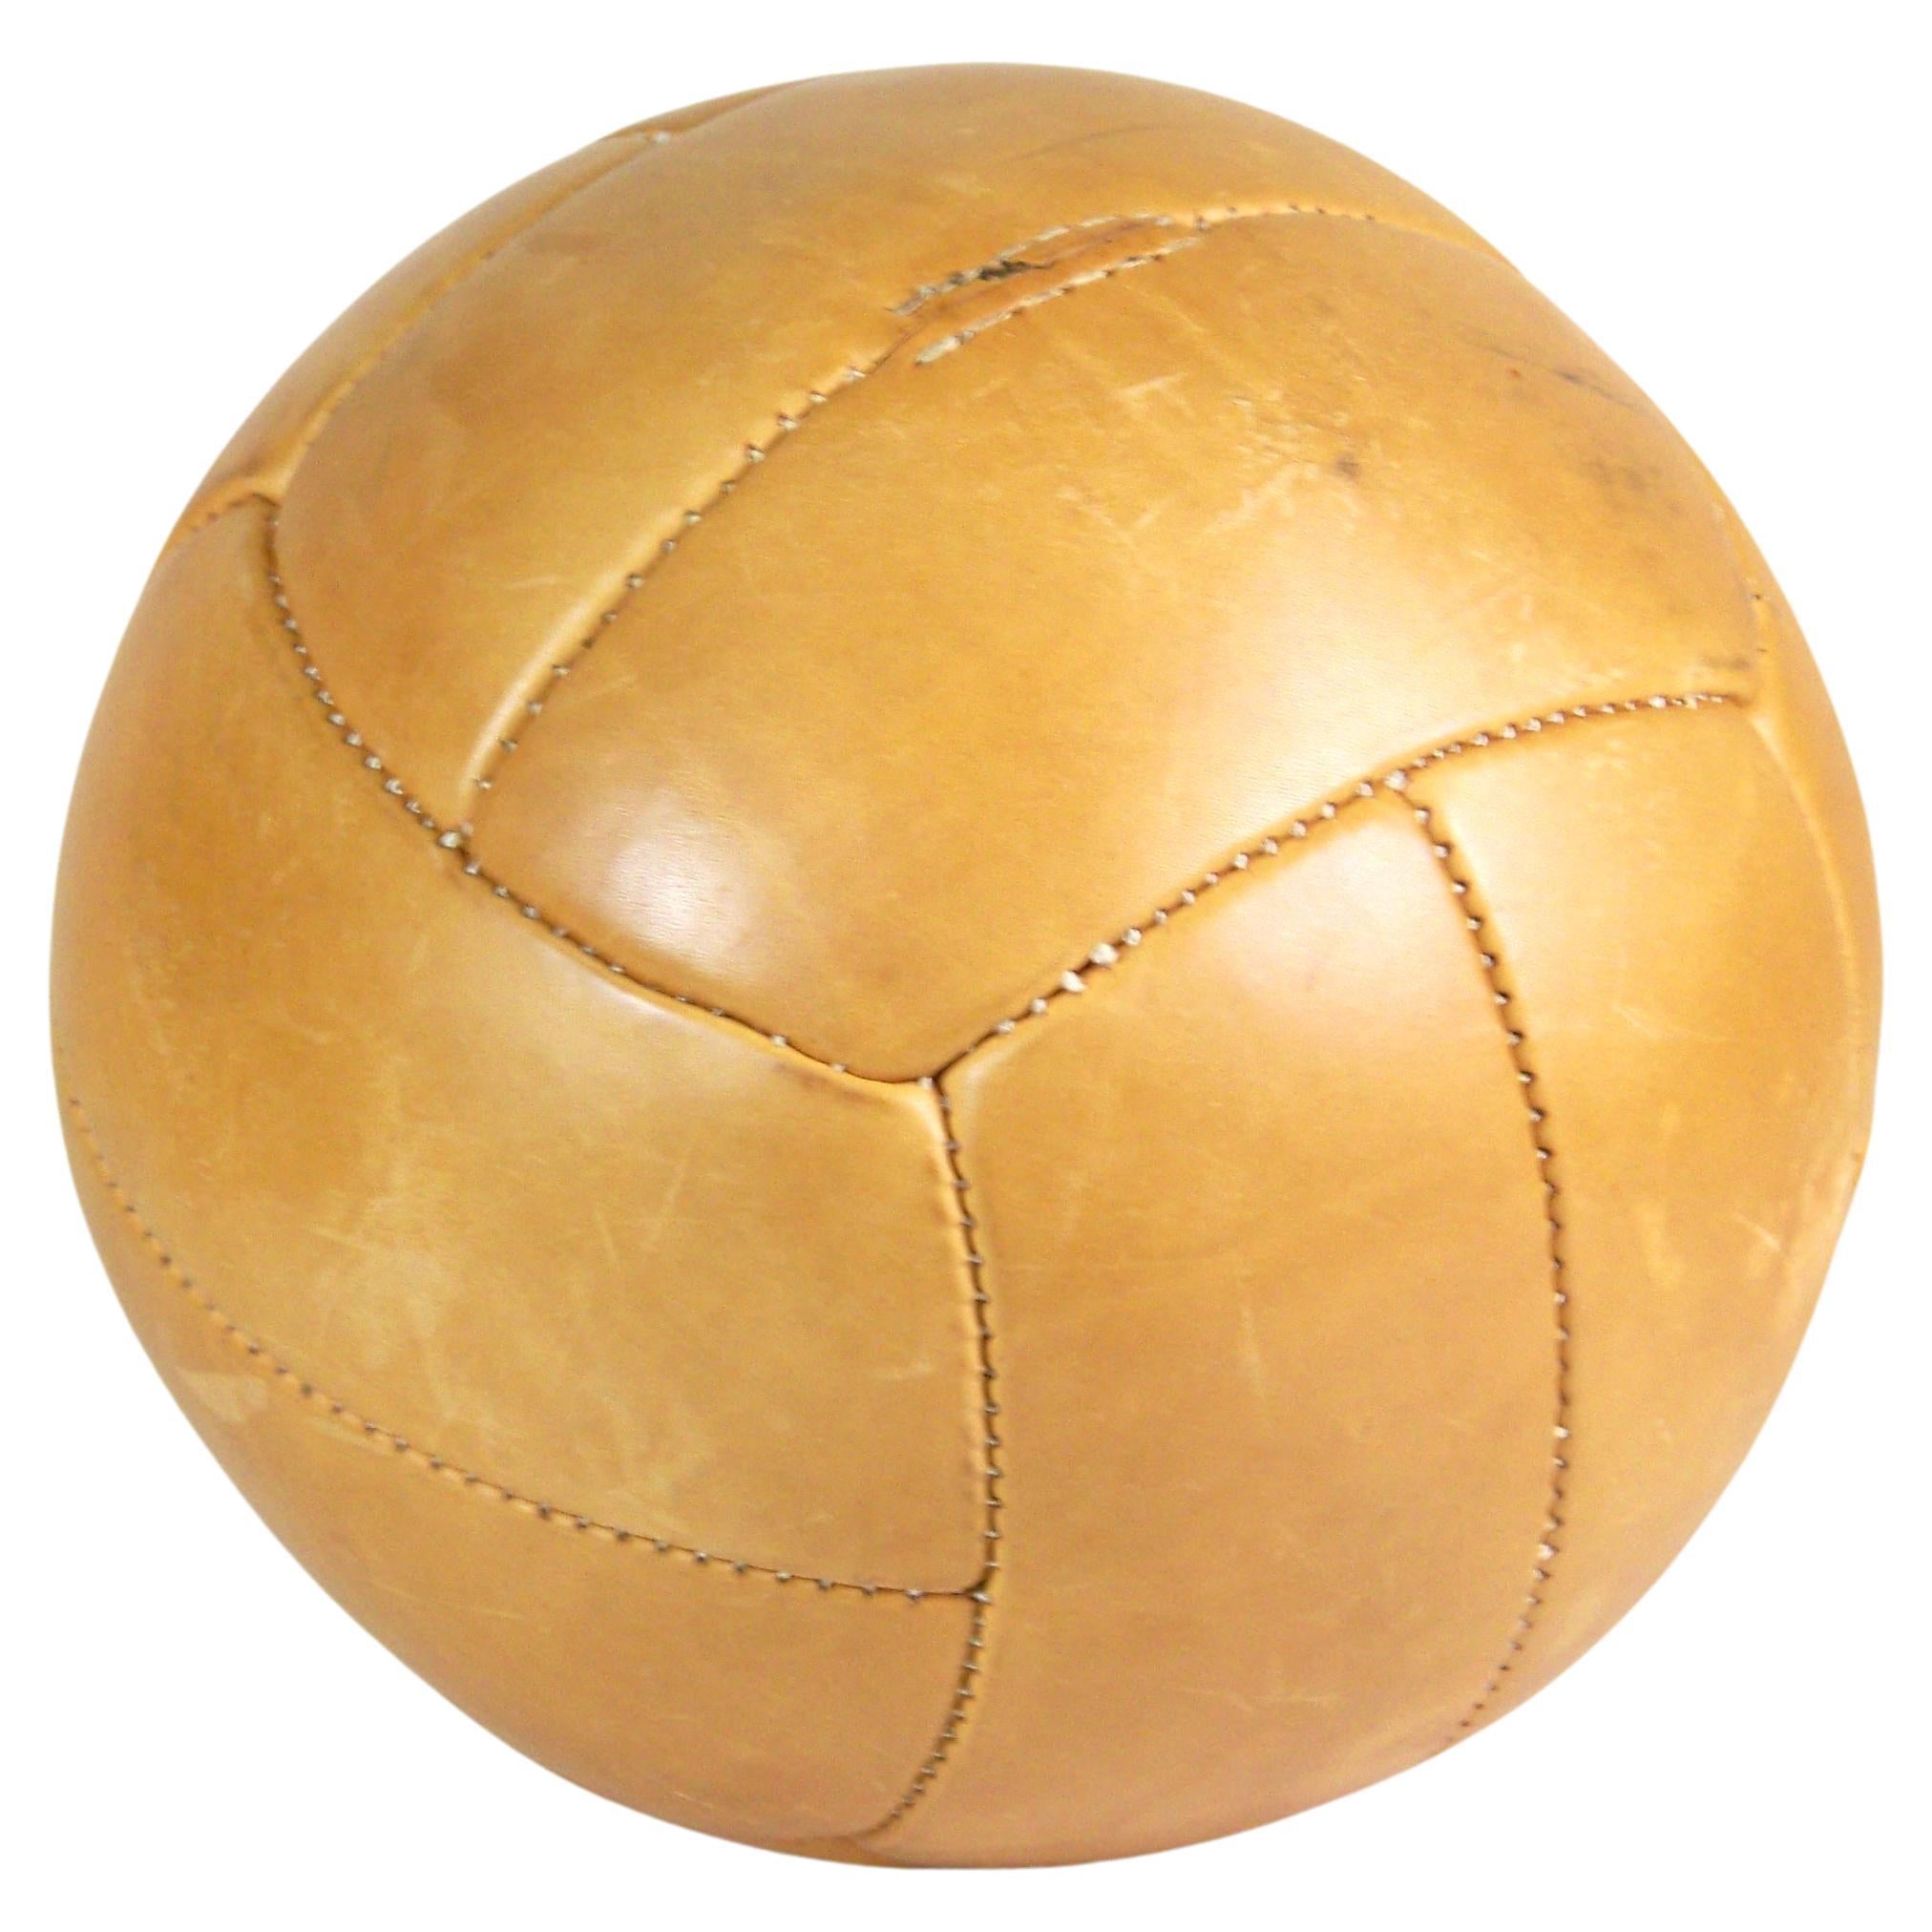 Vintage Brown Leather Medicine Ball - 4, 5kg - 1960s 